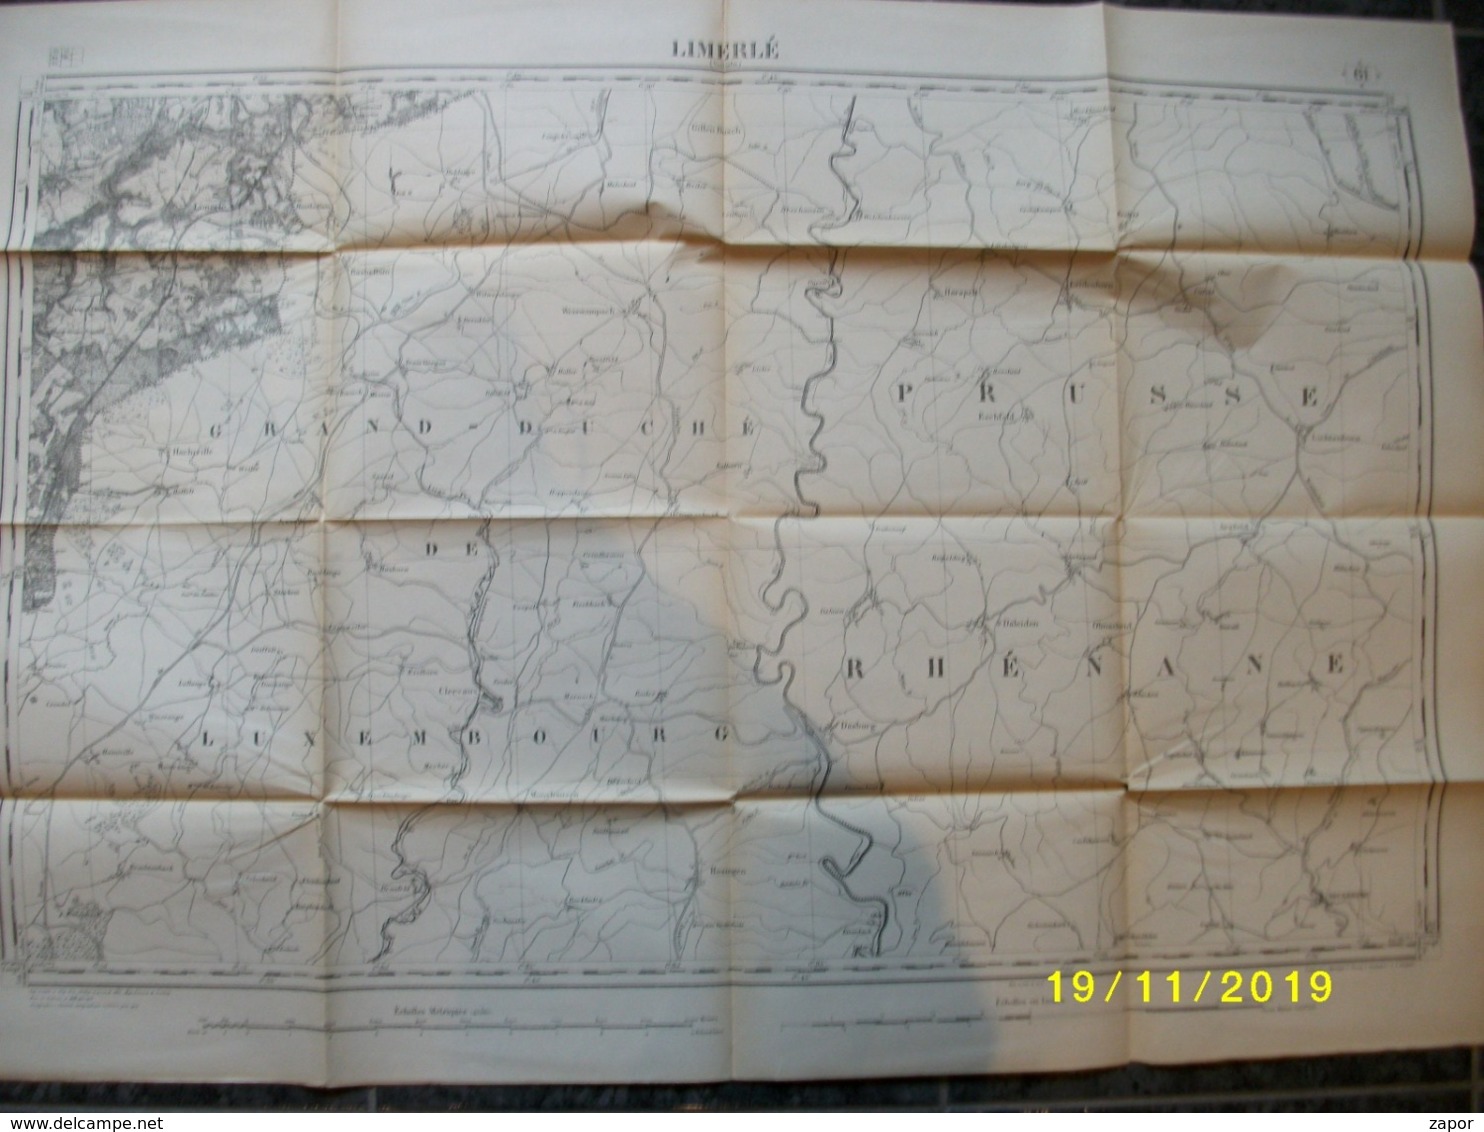 Carte Topographique De Limerlé (Clermont - Renglez - Hachiville - Eschfeld - Runnelange - Clervaux - Olmscheid) - Cartes Topographiques